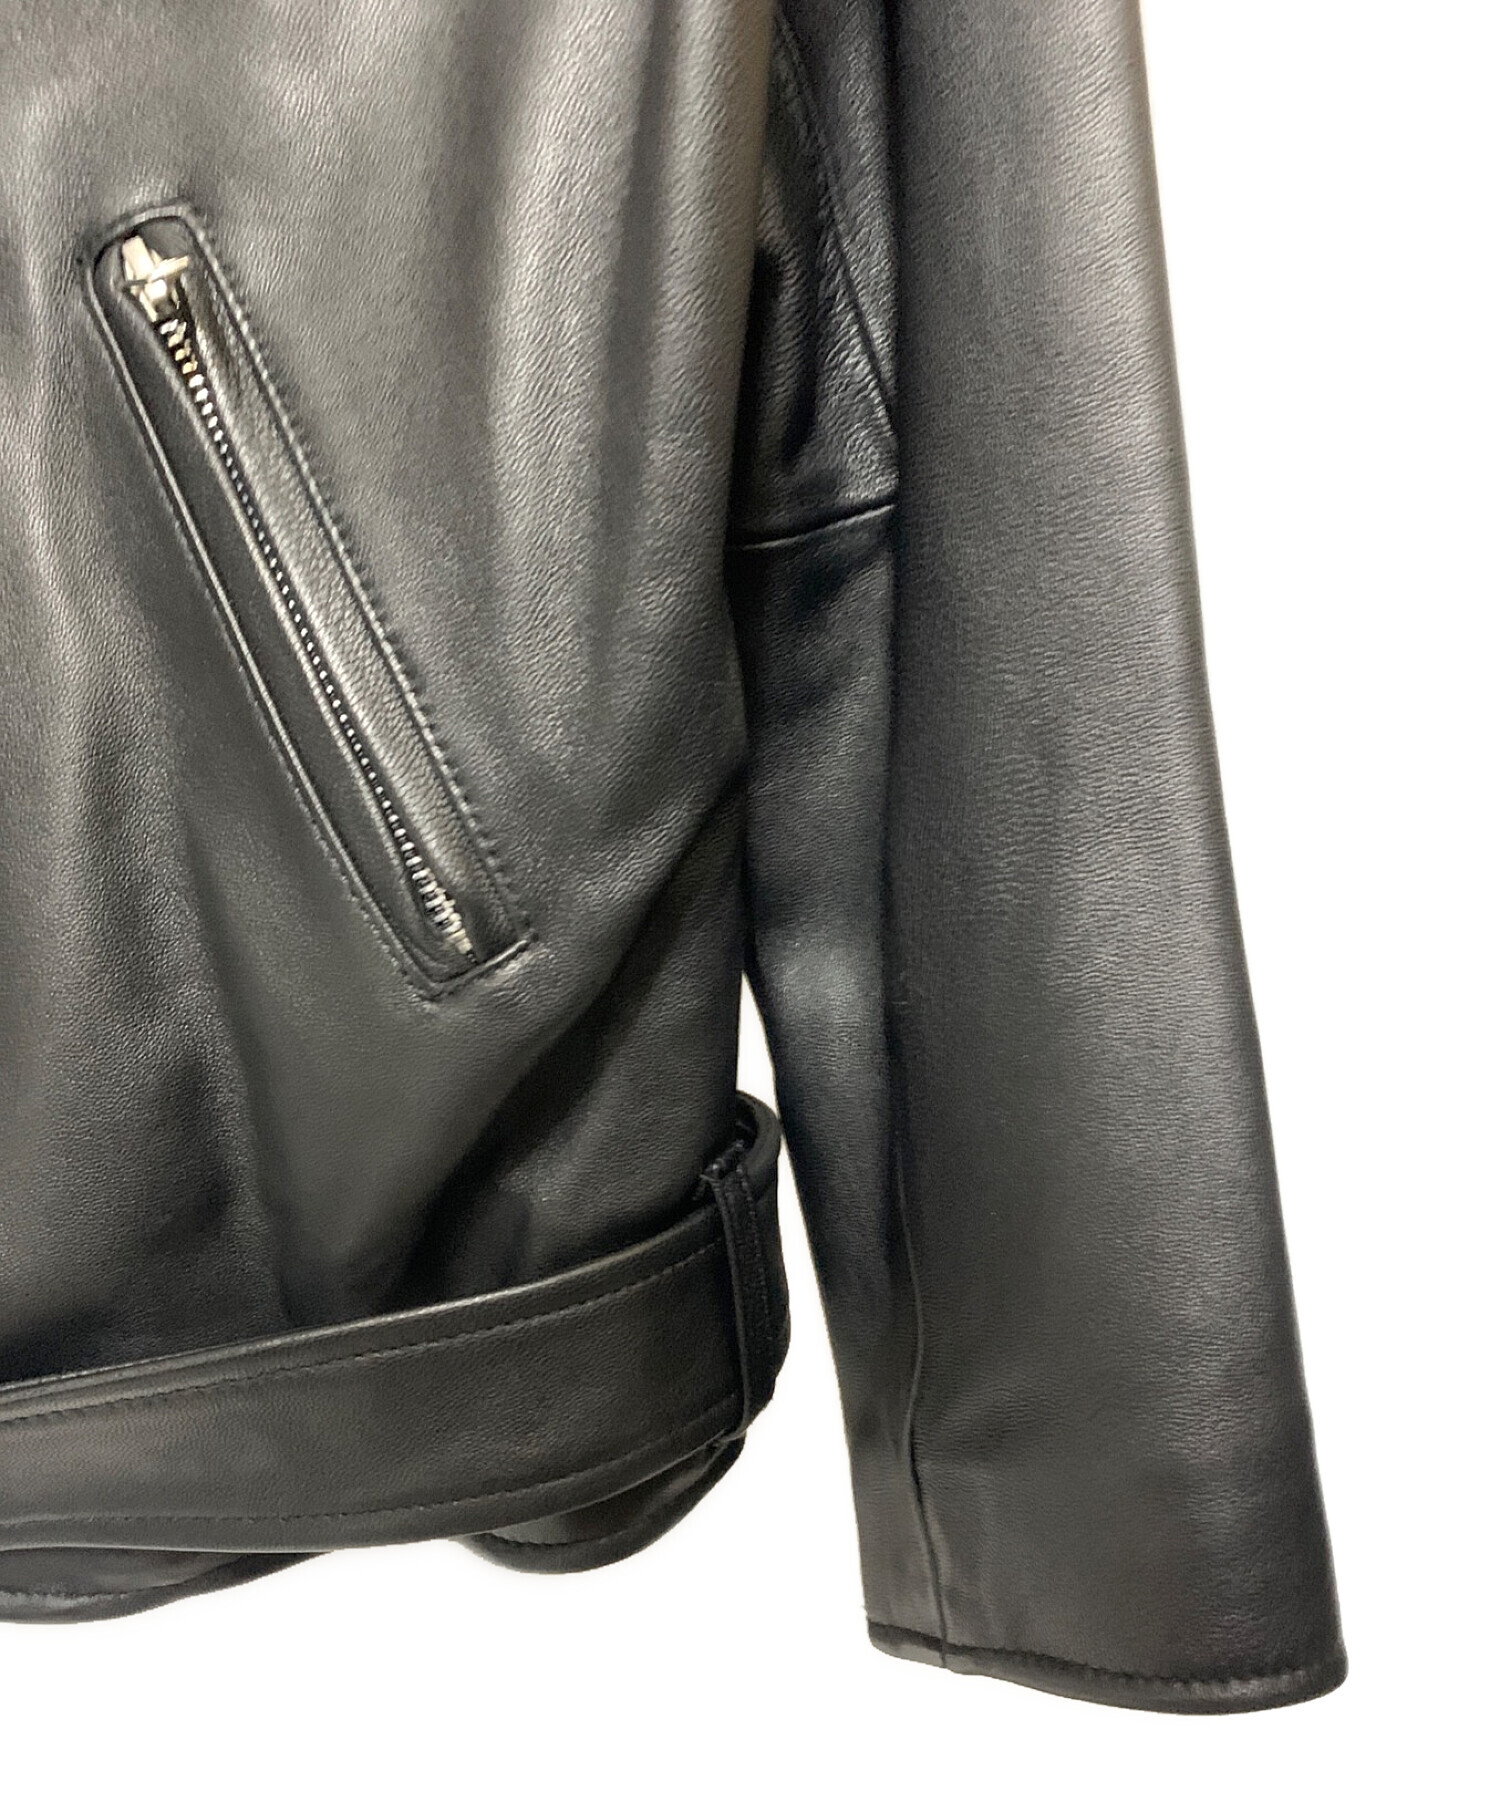 Ungrid (アングリッド) リアルレザーライダースジャケット ブラック サイズ:M